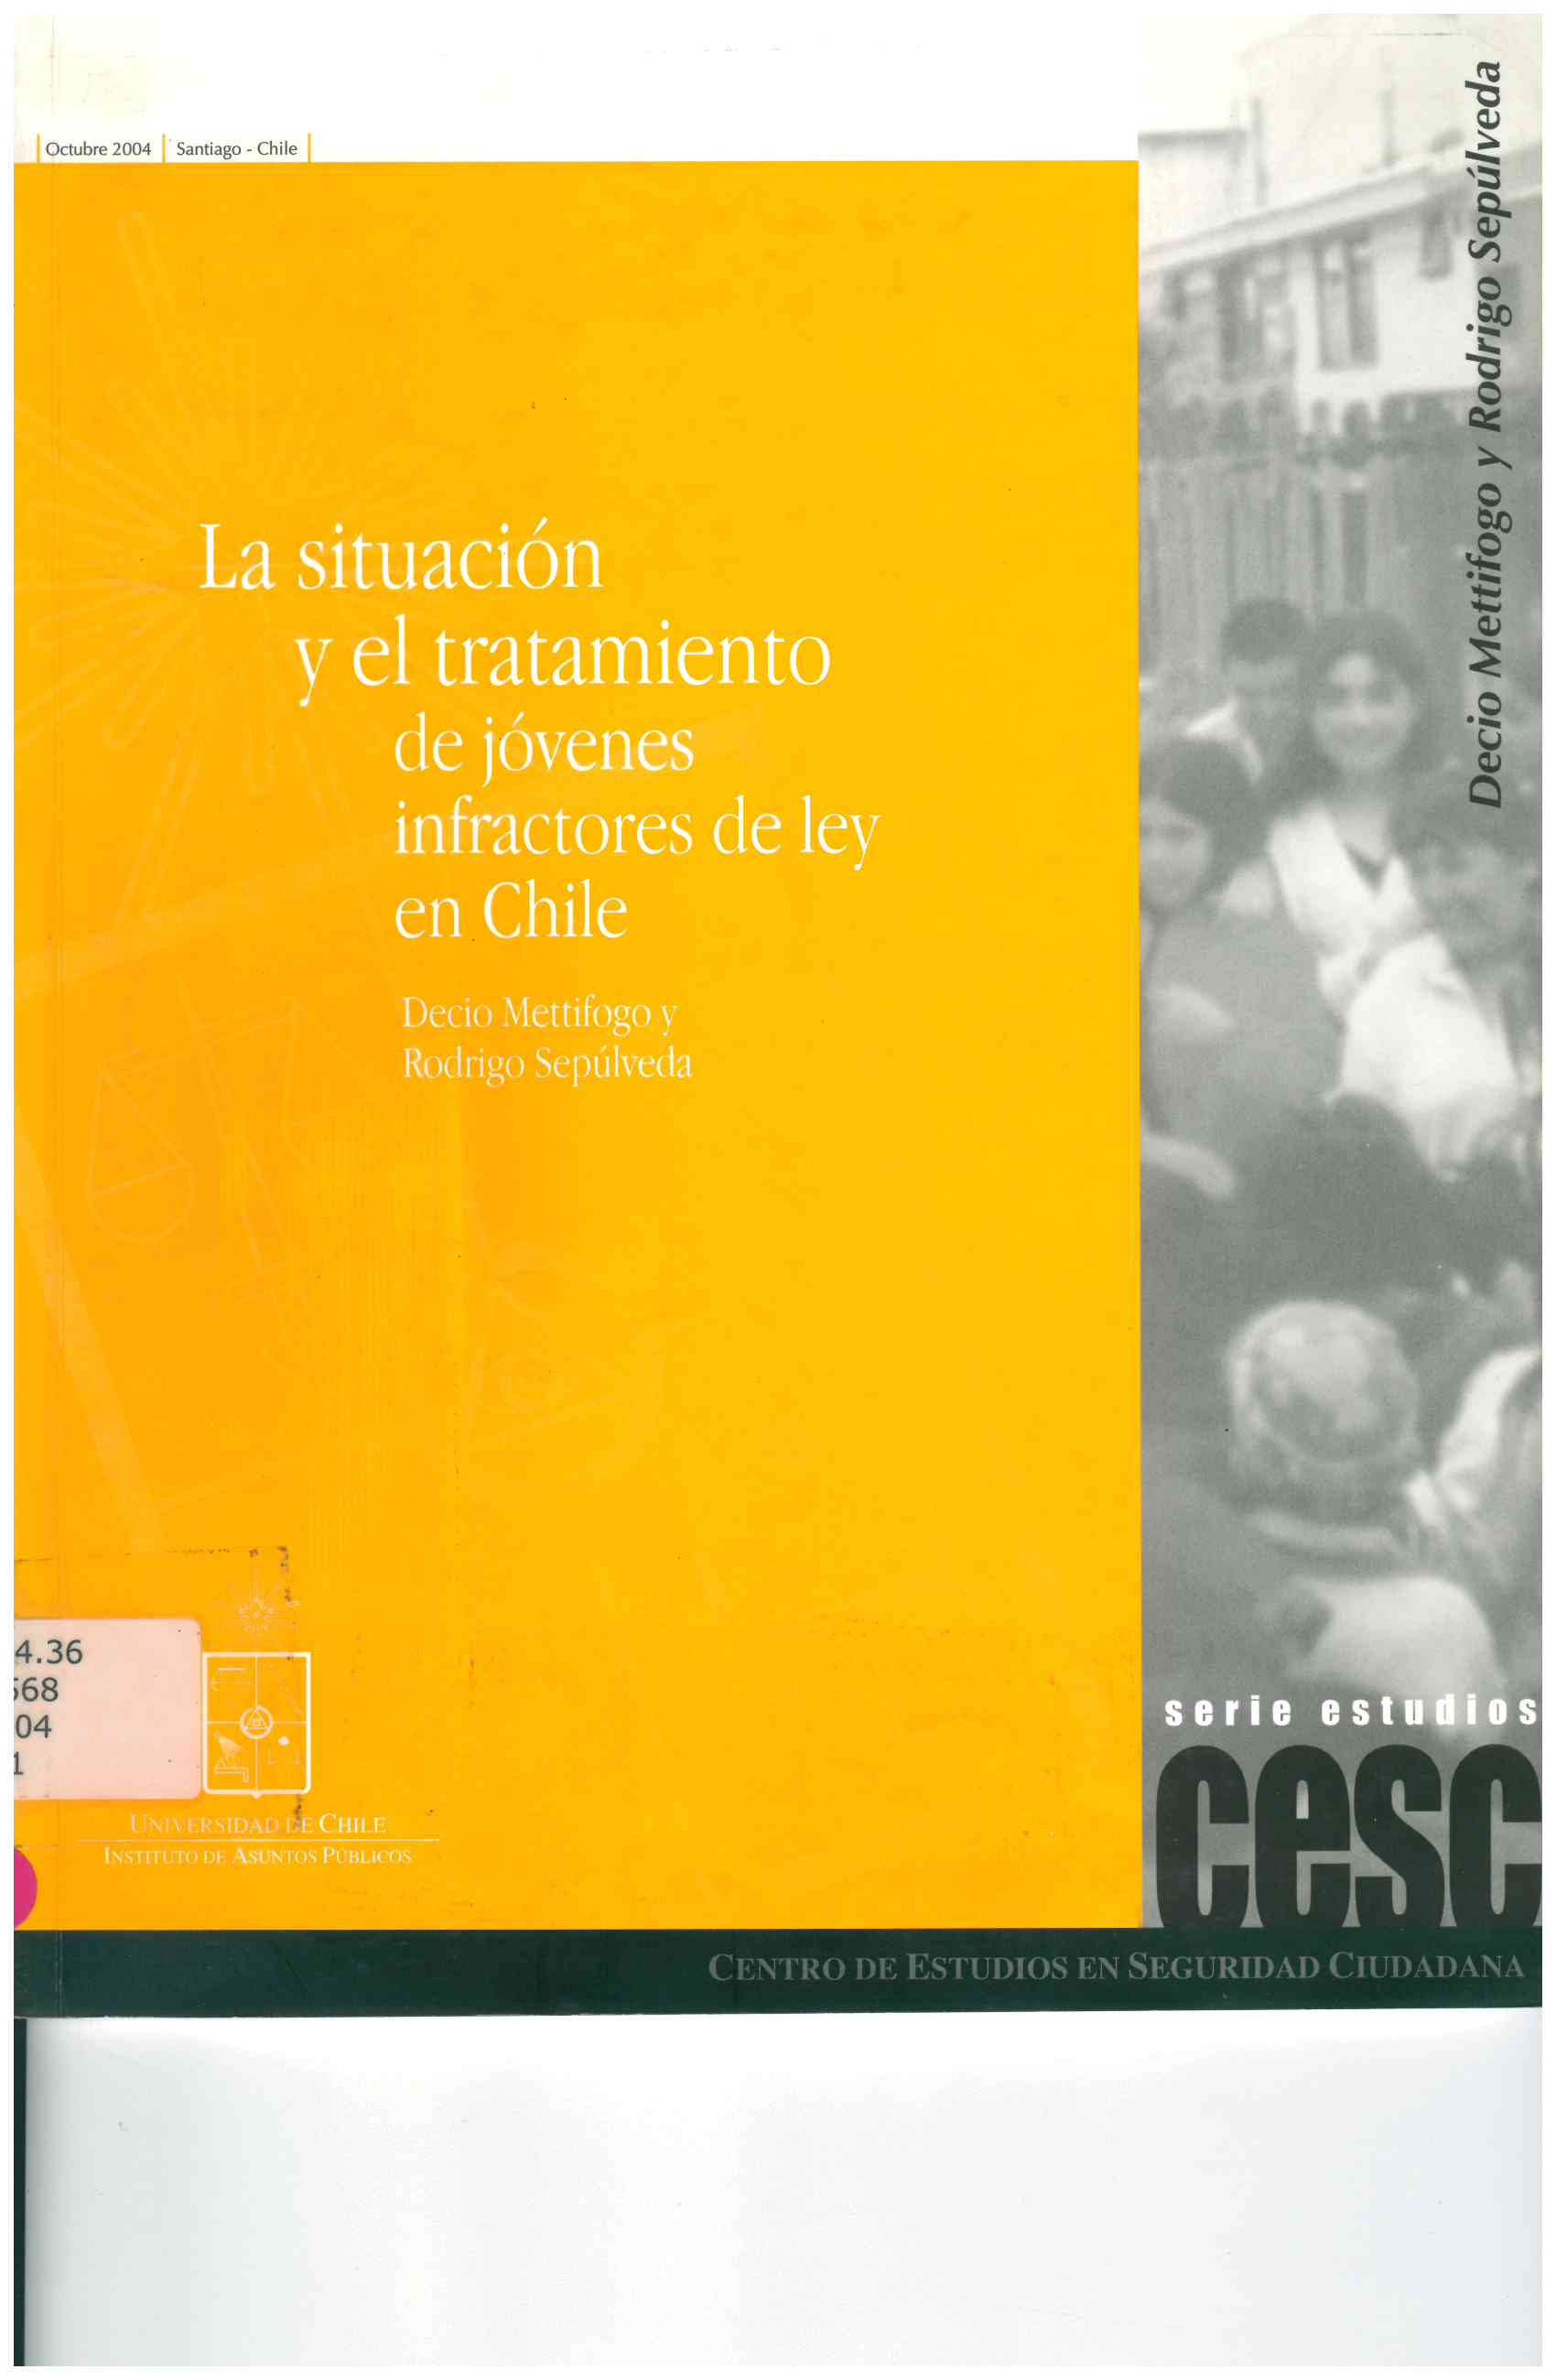 La situación y el tratamiento de jóvenes infractores de ley en chile